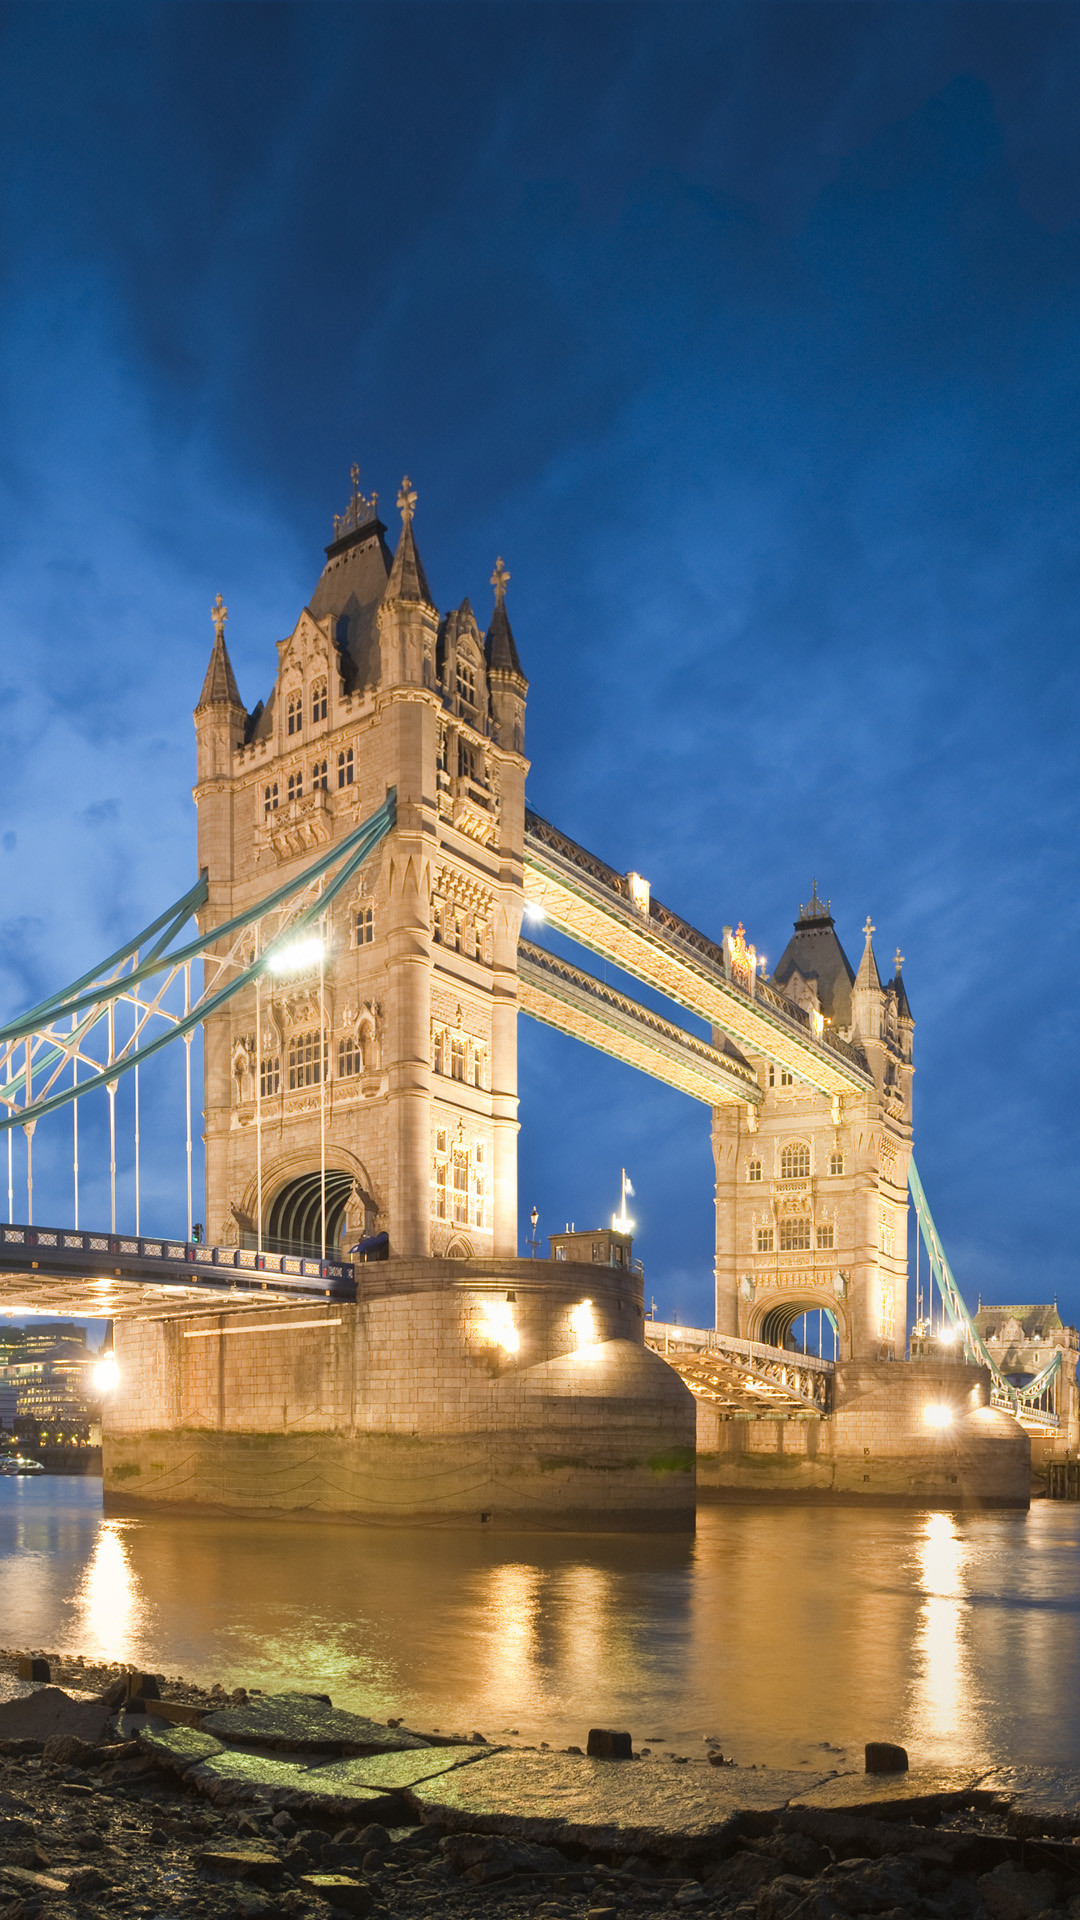 ロンドン橋の壁紙,水路,建築,水,観光の名所,市